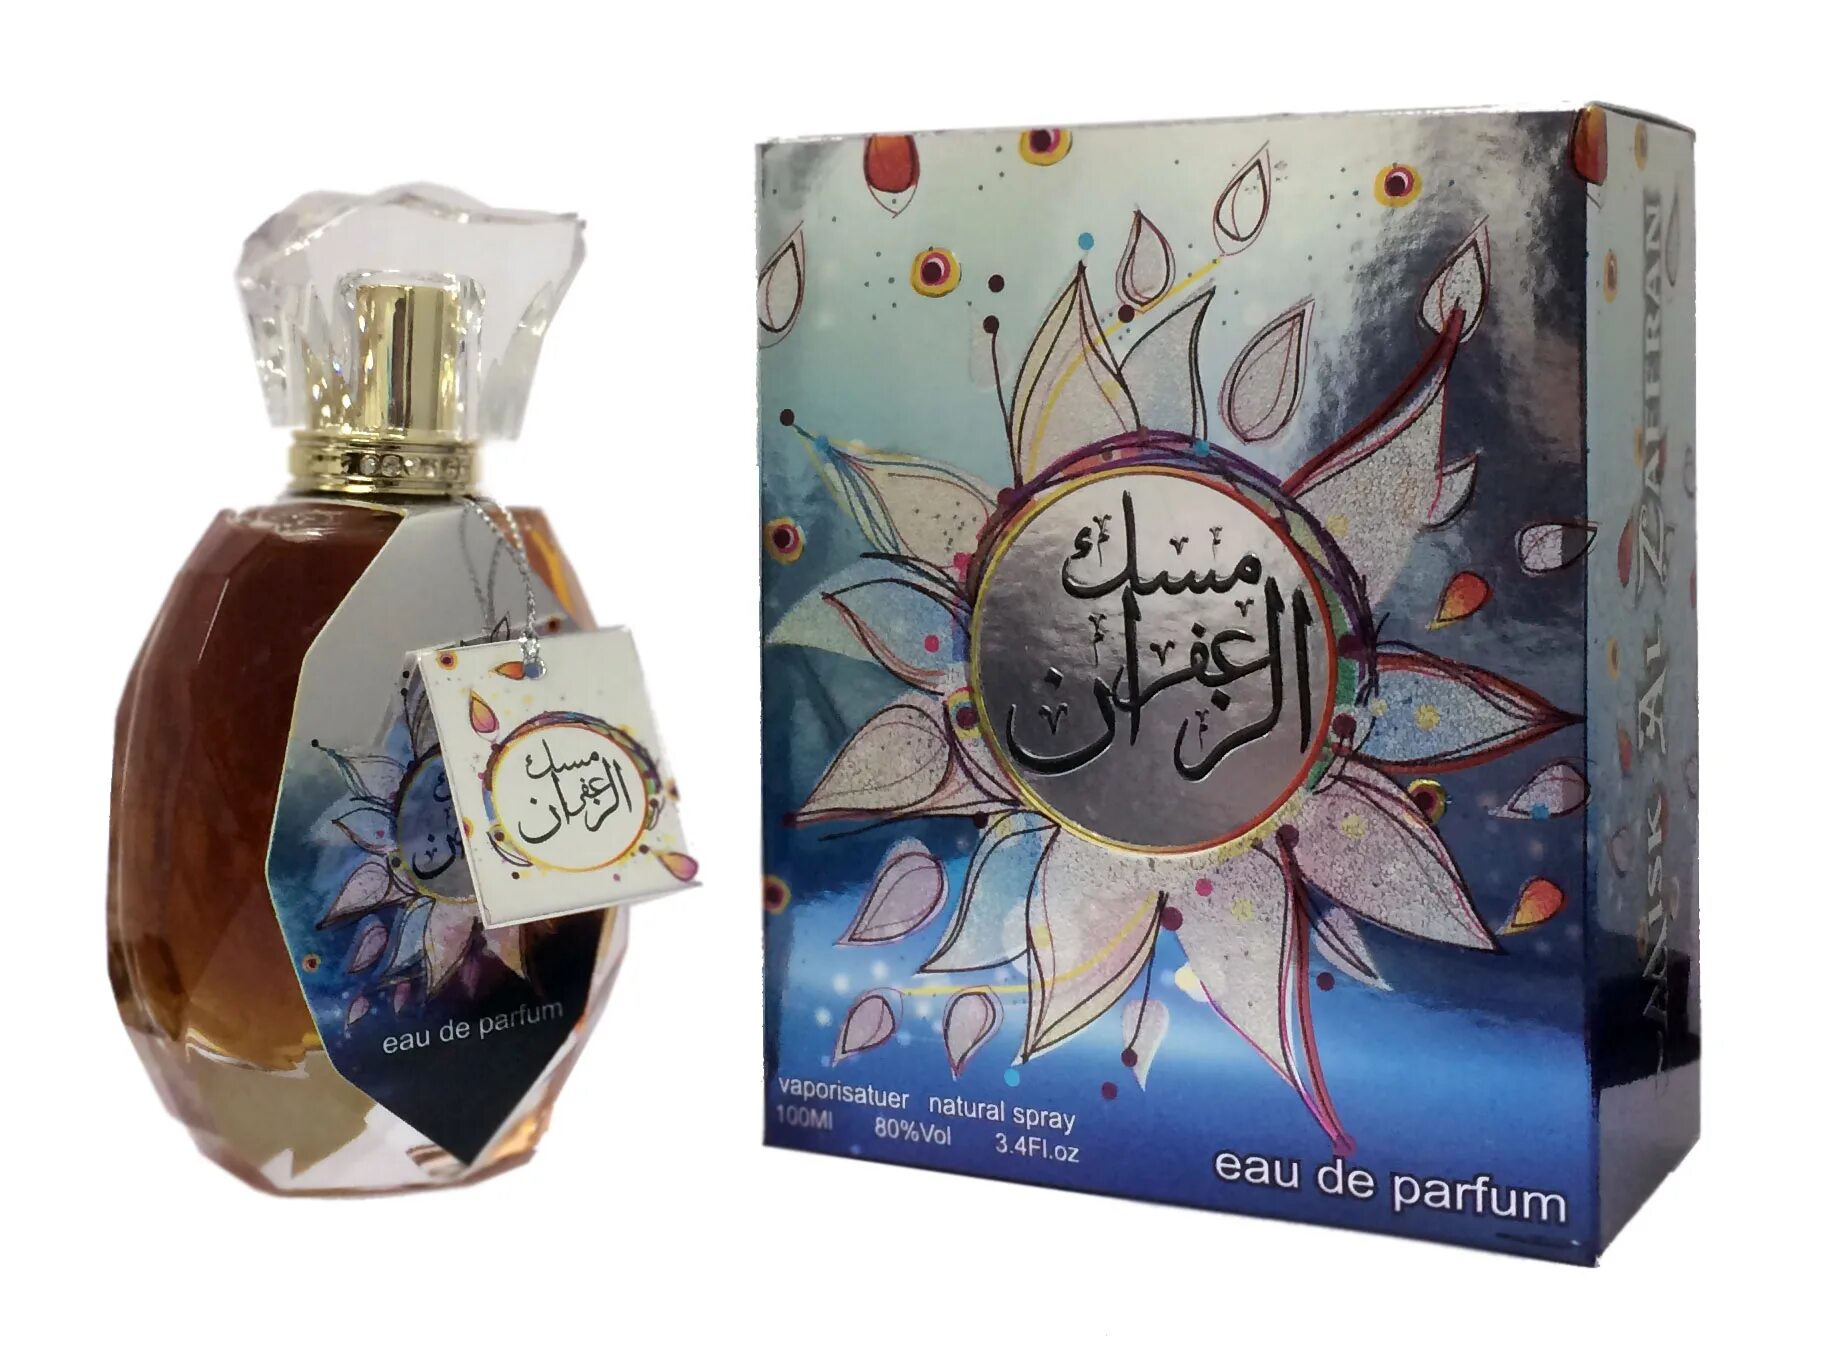 Купить парфюм оаэ. Mukhallat Aini for men 100 ml. Духи из ОАЭ. Арабские духи Элит Парфюм. Арабский Парфюм женский.